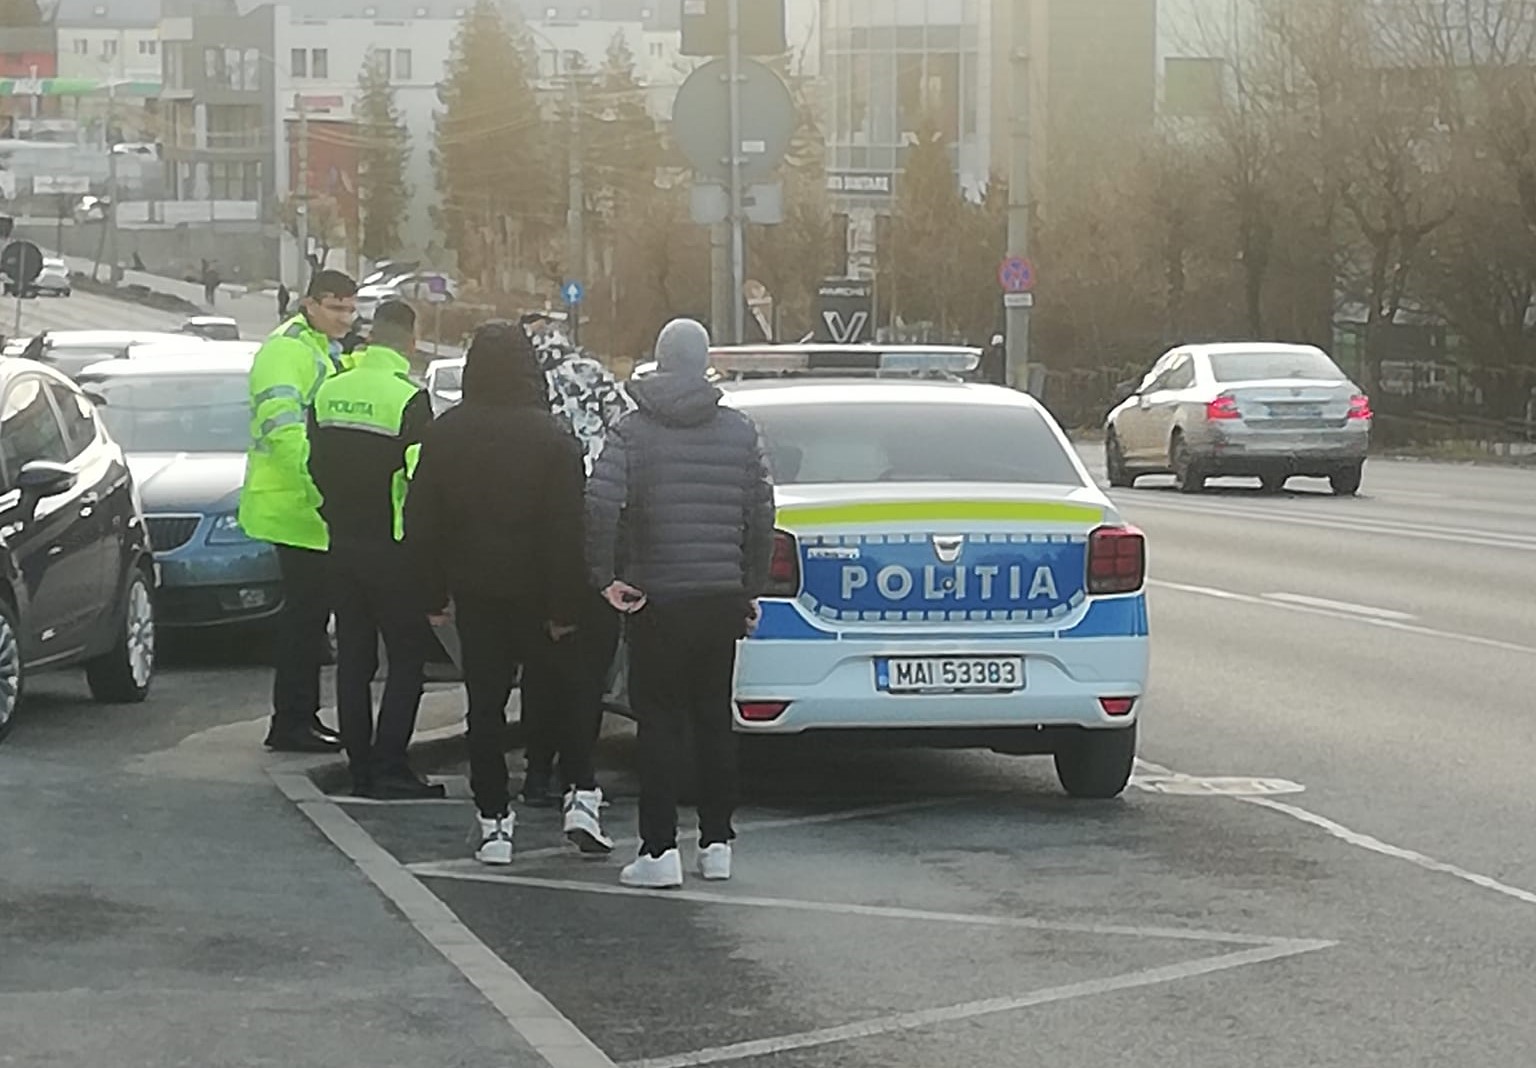 Un tânăr de 18 ani a fost prins de polițiștii clujeni în timp ce conducea drogat pe strada Observatorului din Cluj-Napoca/ Foto: Paul Gheorgheci - Facebook